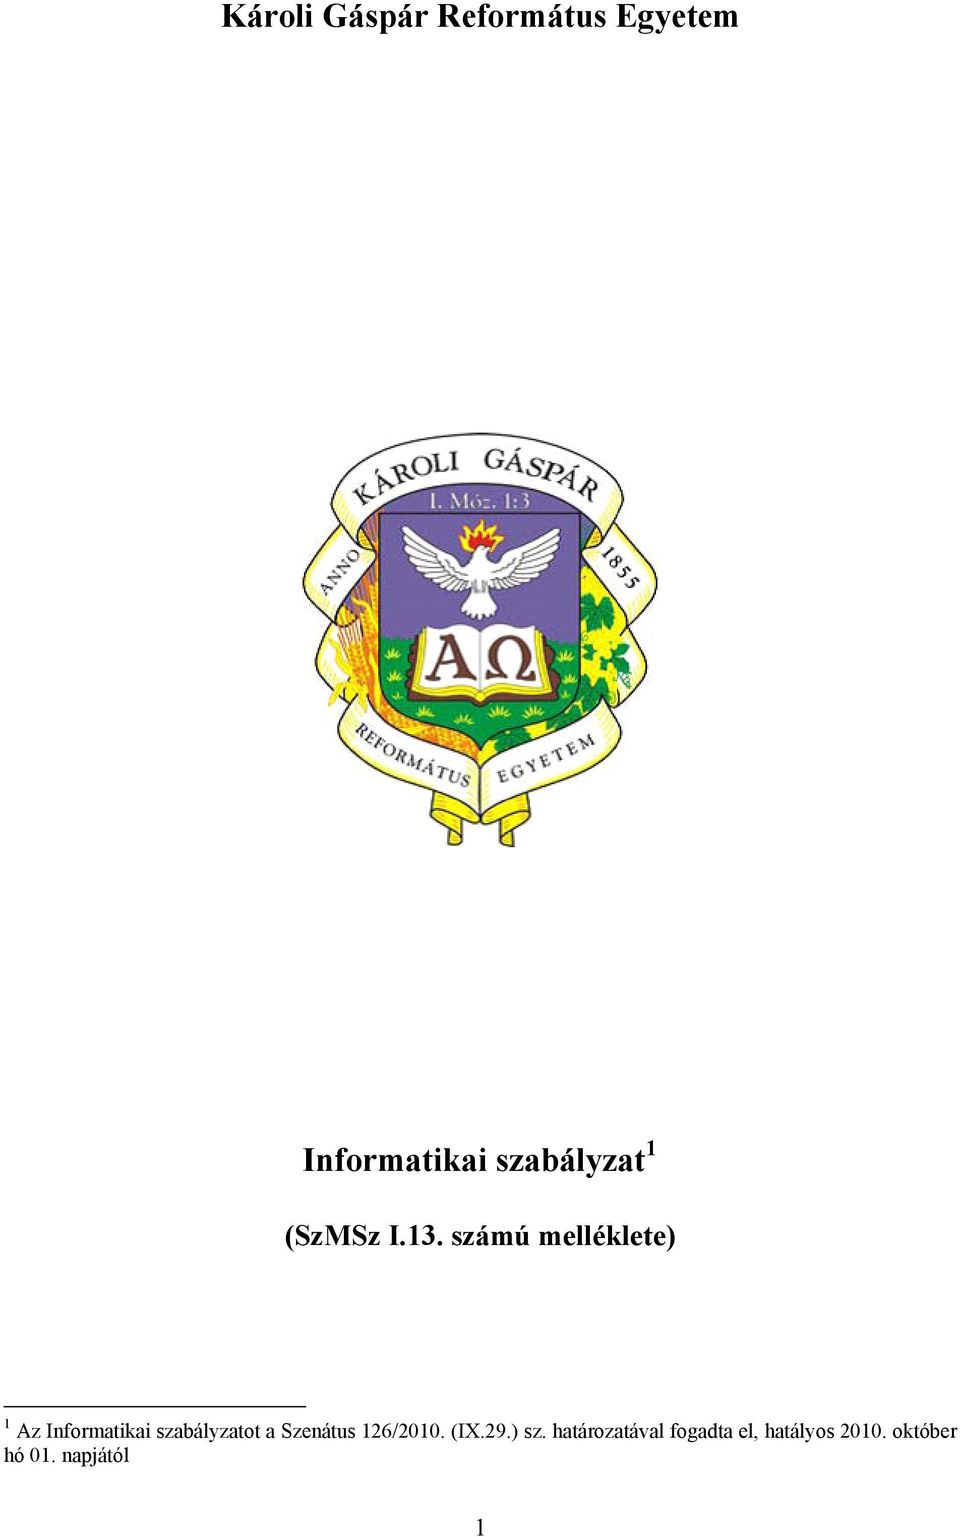 Károli Gáspár Református Egyetem - PDF Free Download